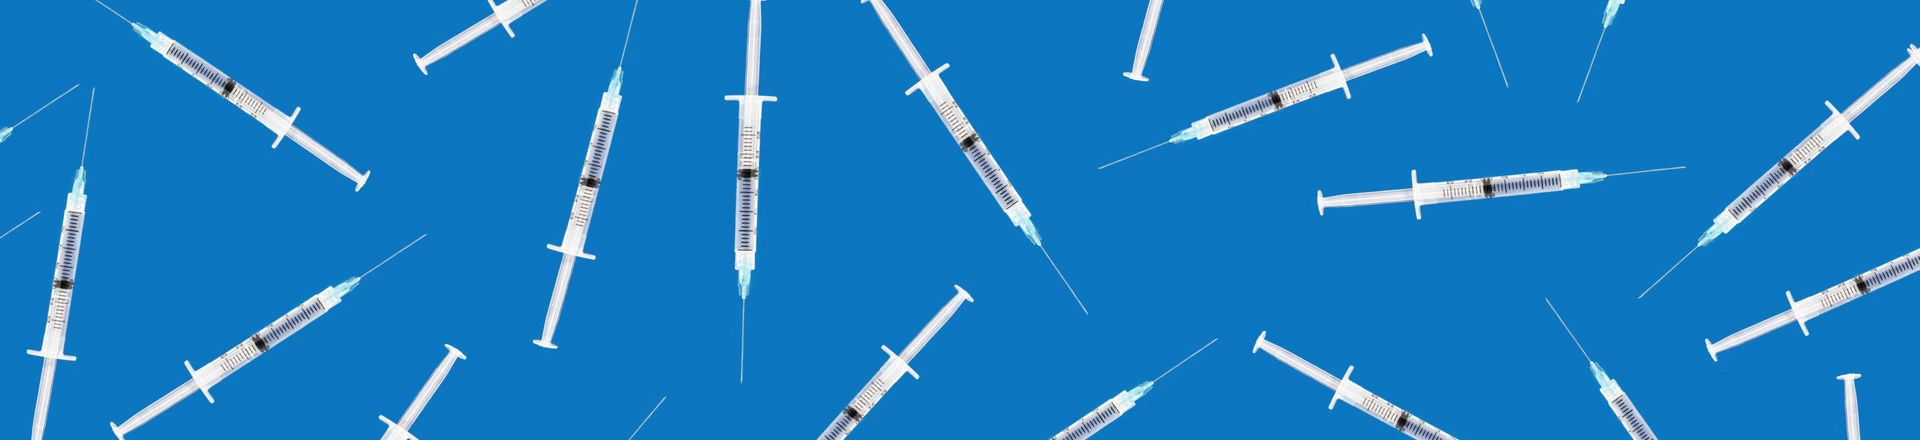 Many medical syringes scattered on blue background